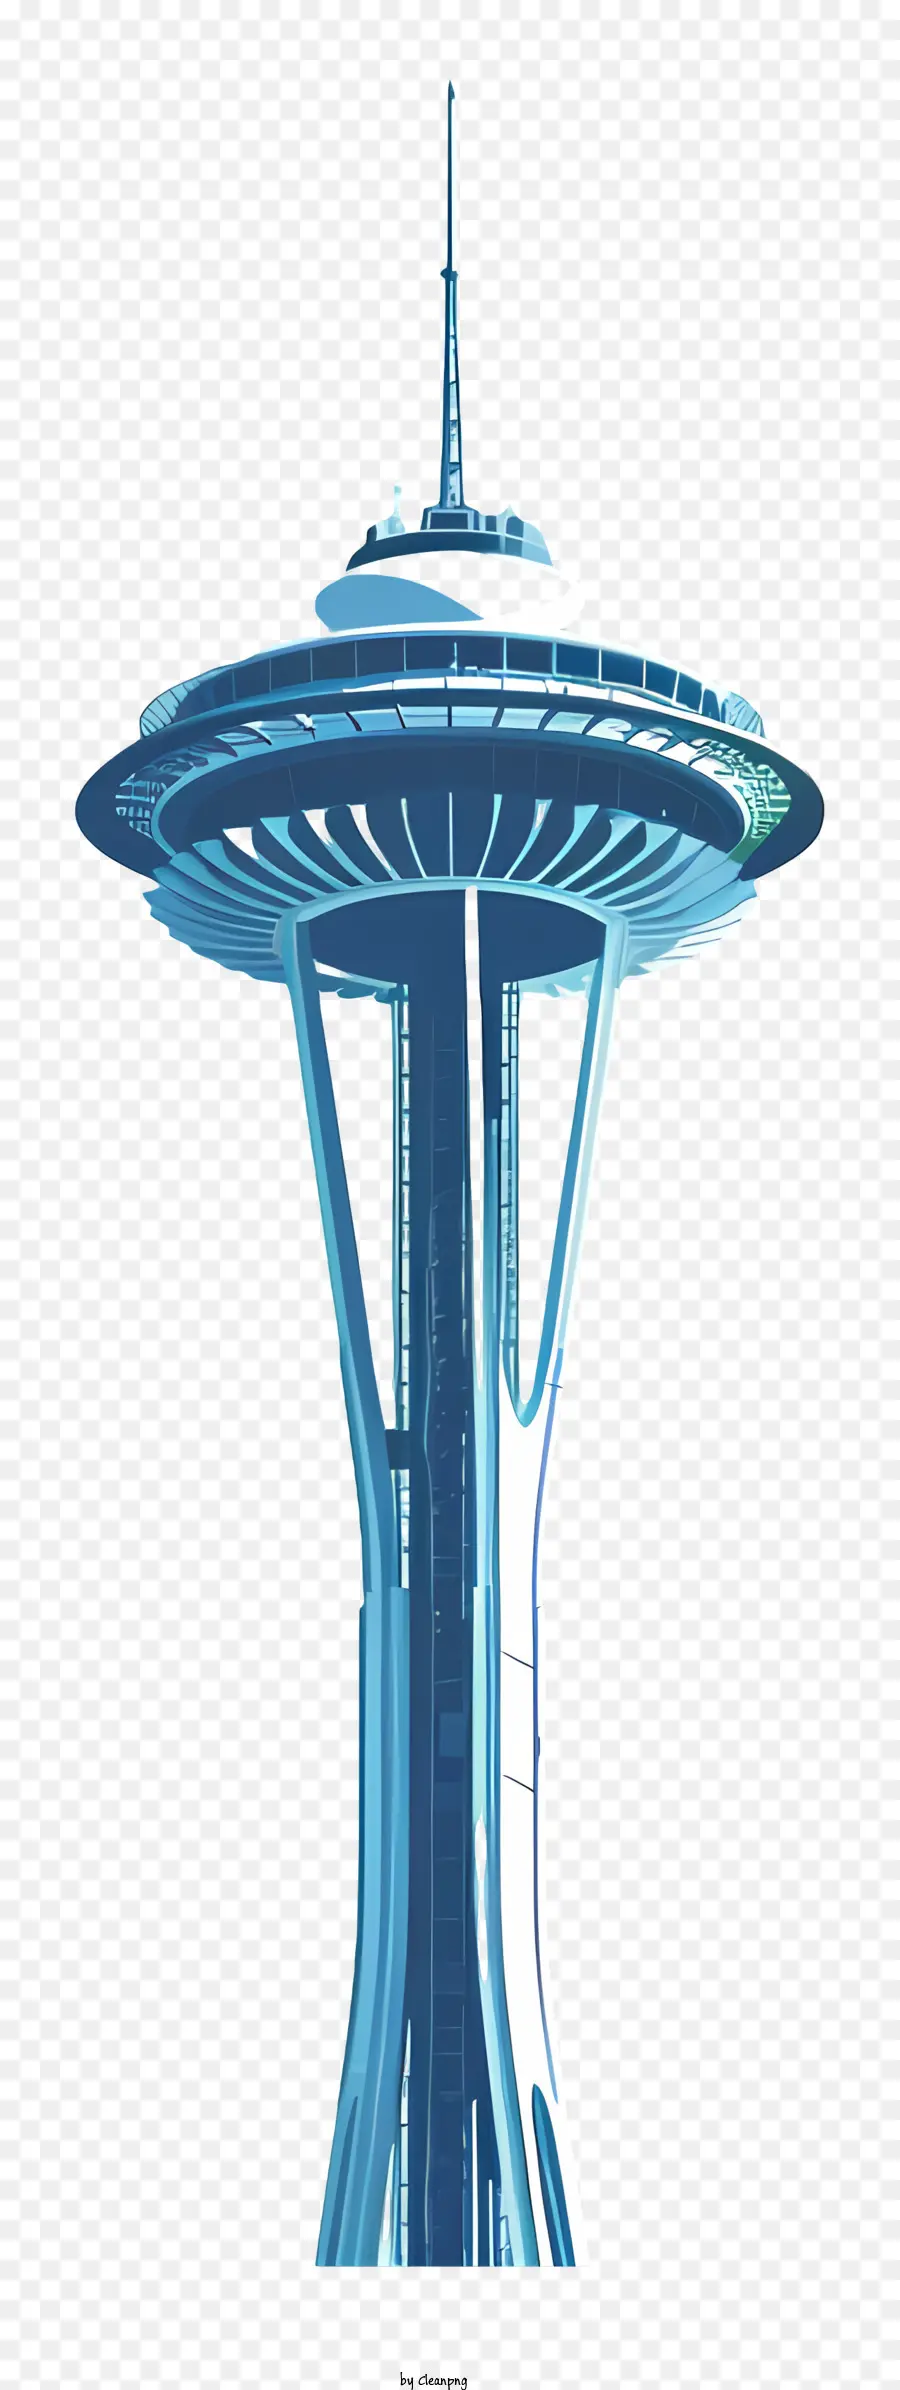 Không gian kim không gian tháp thiết kế xoắn ốc màu xanh - Tháp kim không gian xanh với xoắn ốc trắng